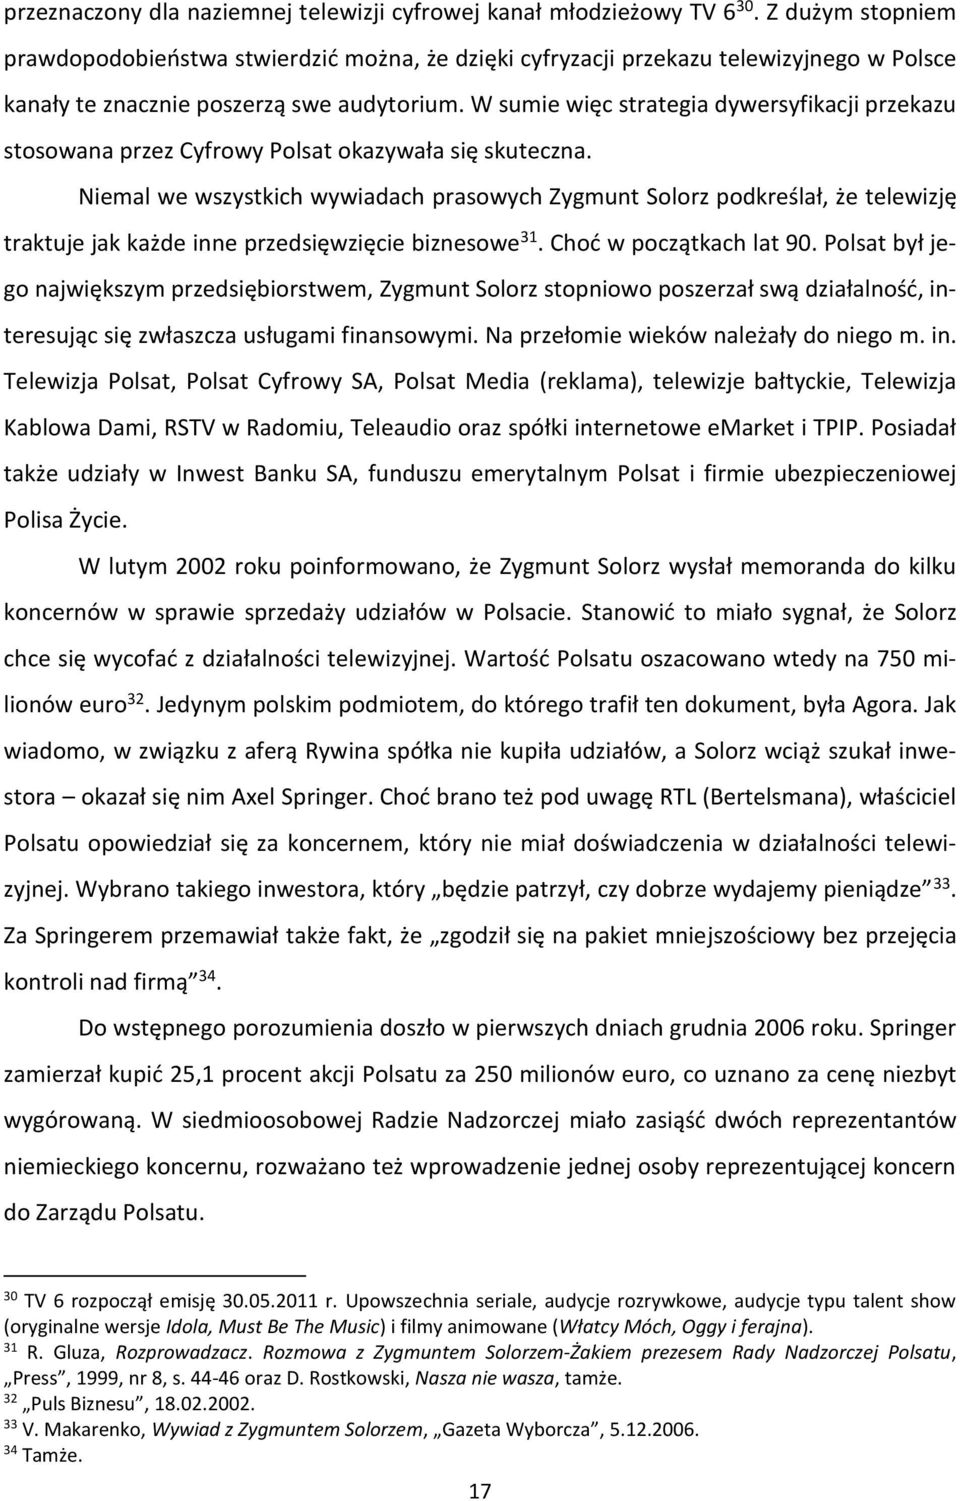 W sumie więc strategia dywersyfikacji przekazu stosowana przez Cyfrowy Polsat okazywała się skuteczna.